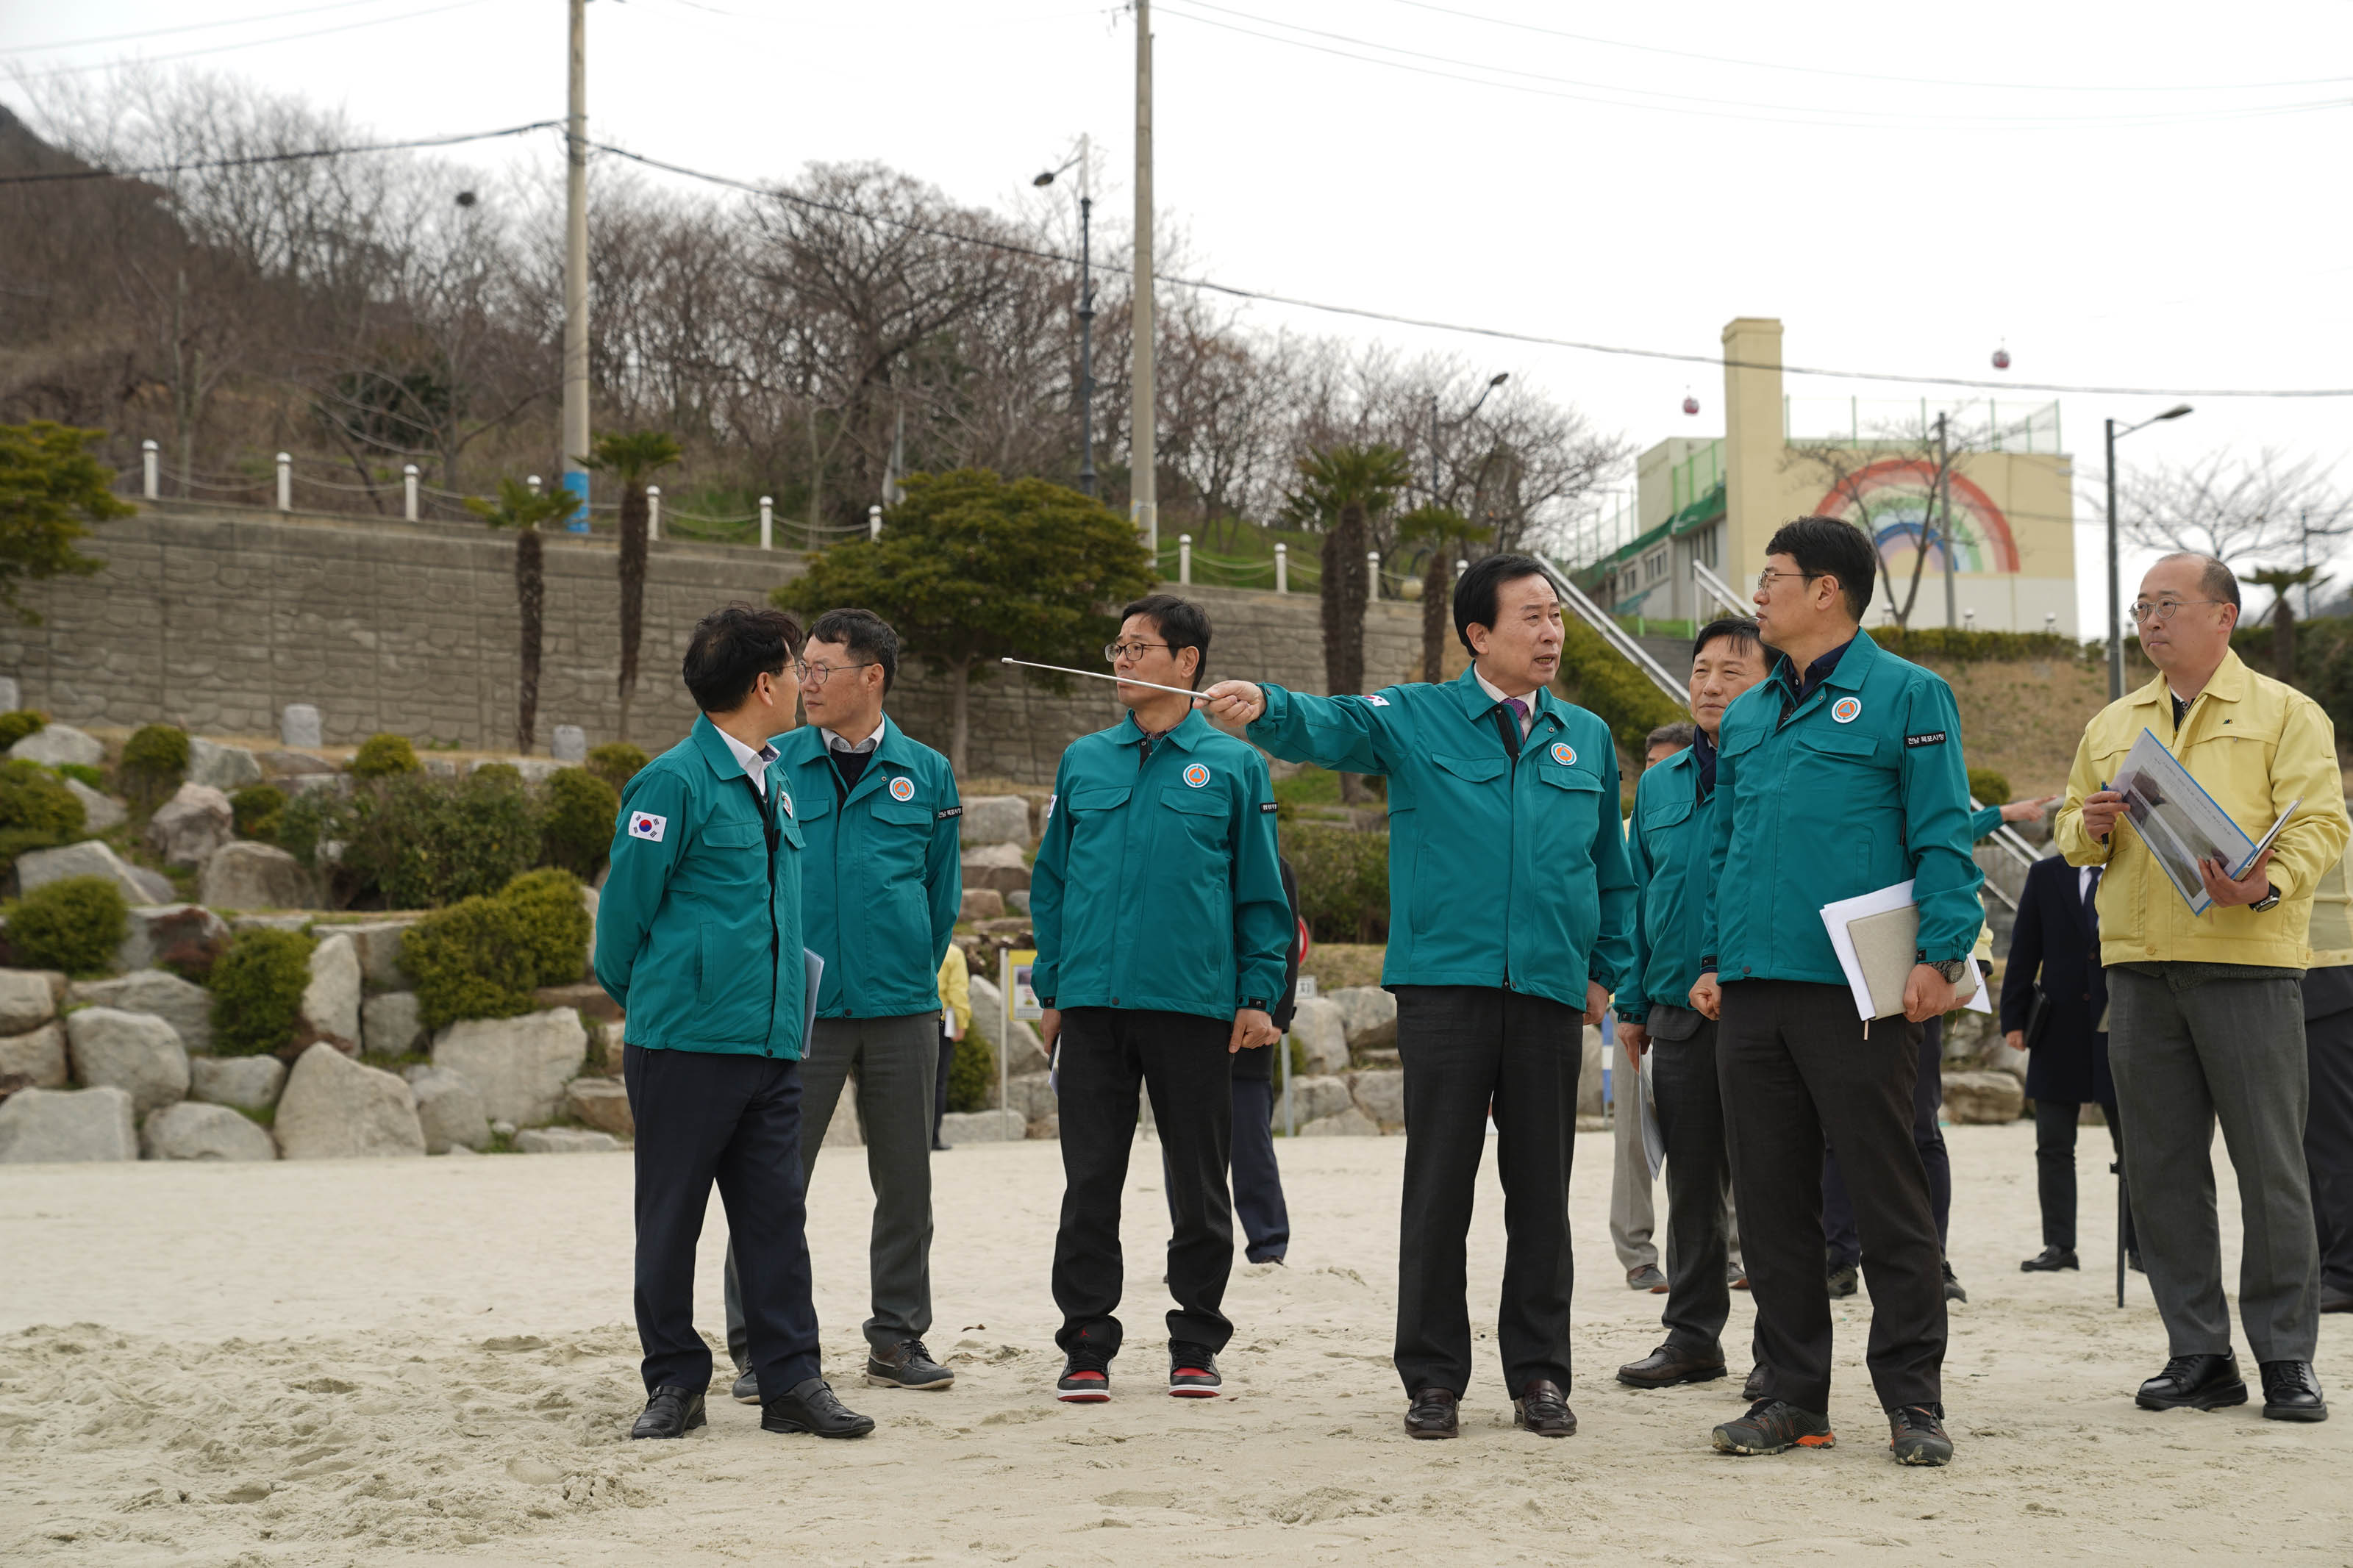 모래로 된 바닥에 박홍률 시장과 직원들이 7명 이상 서있고, 박홍률 시장은 지침봉으로 무언가를 가르키며 이야기 하고 있다.